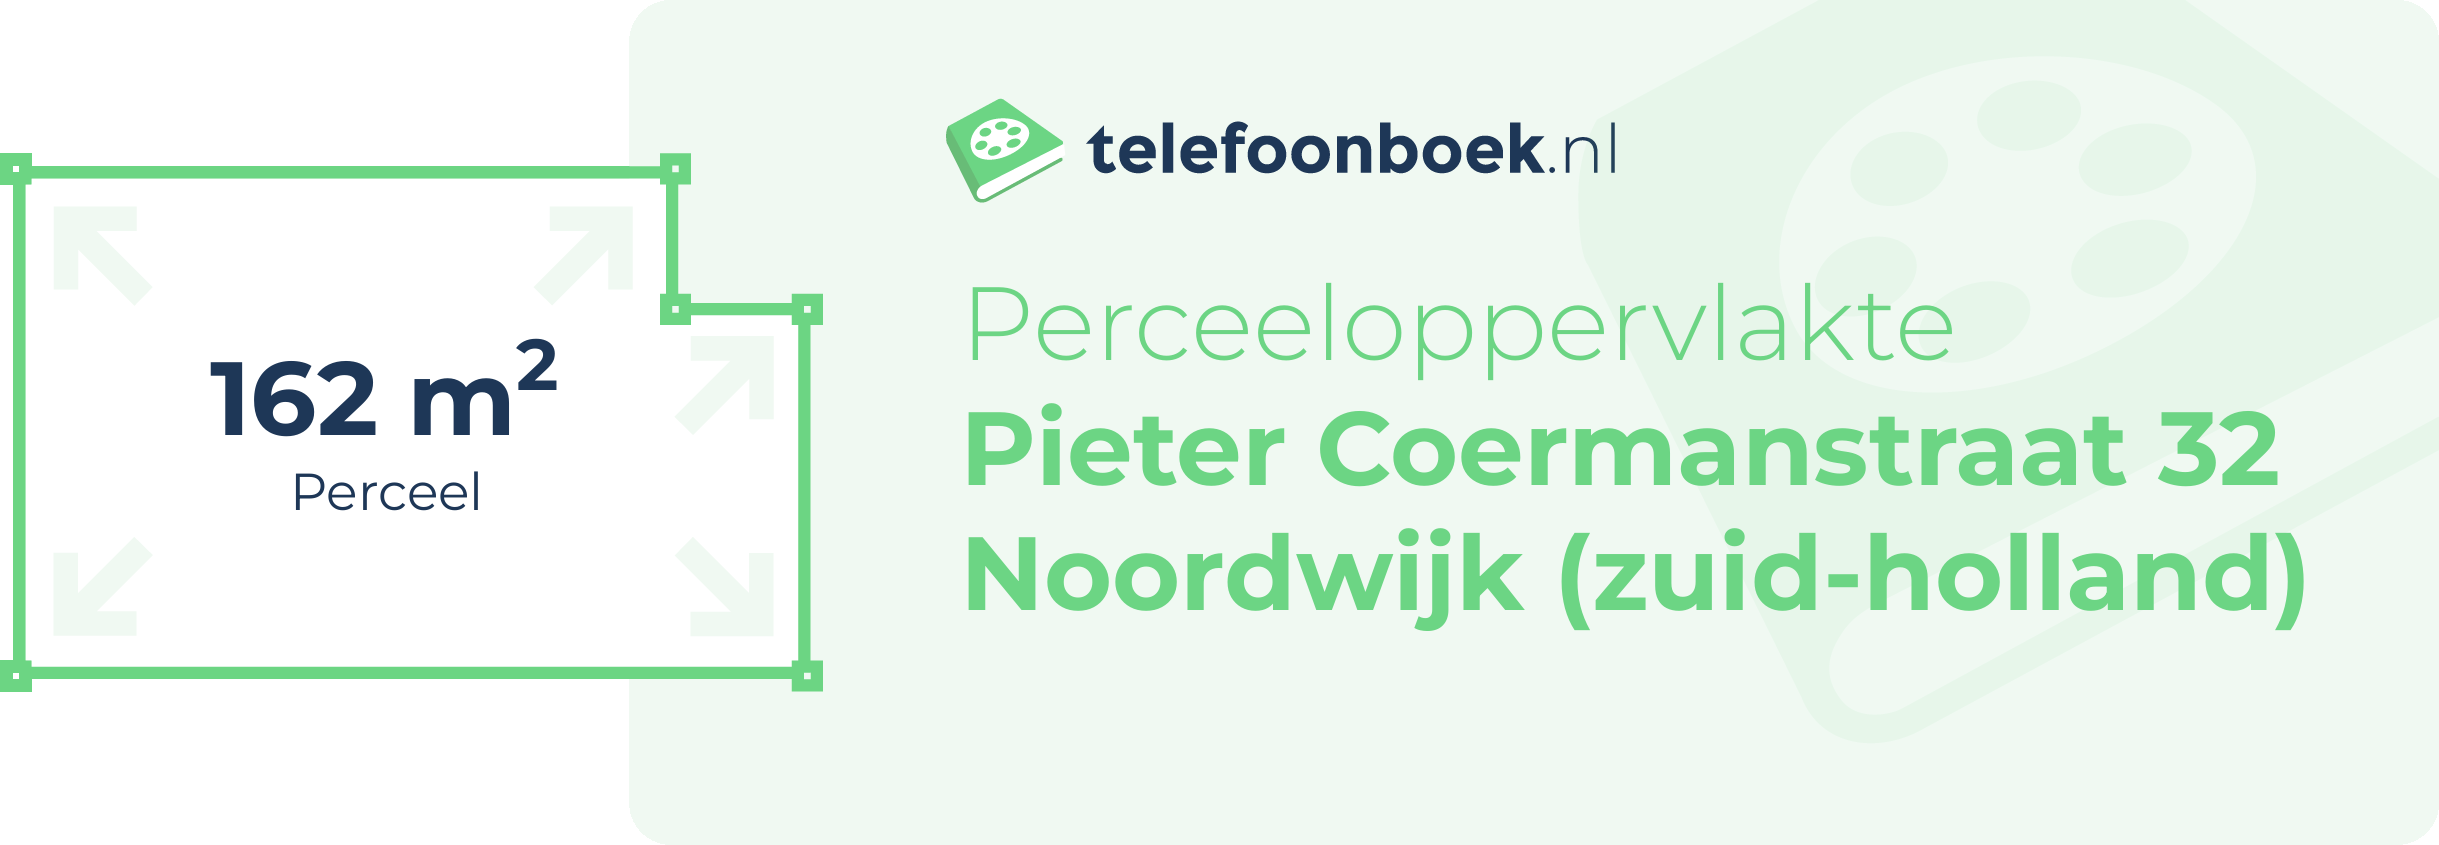 Perceeloppervlakte Pieter Coermanstraat 32 Noordwijk (Zuid-Holland)